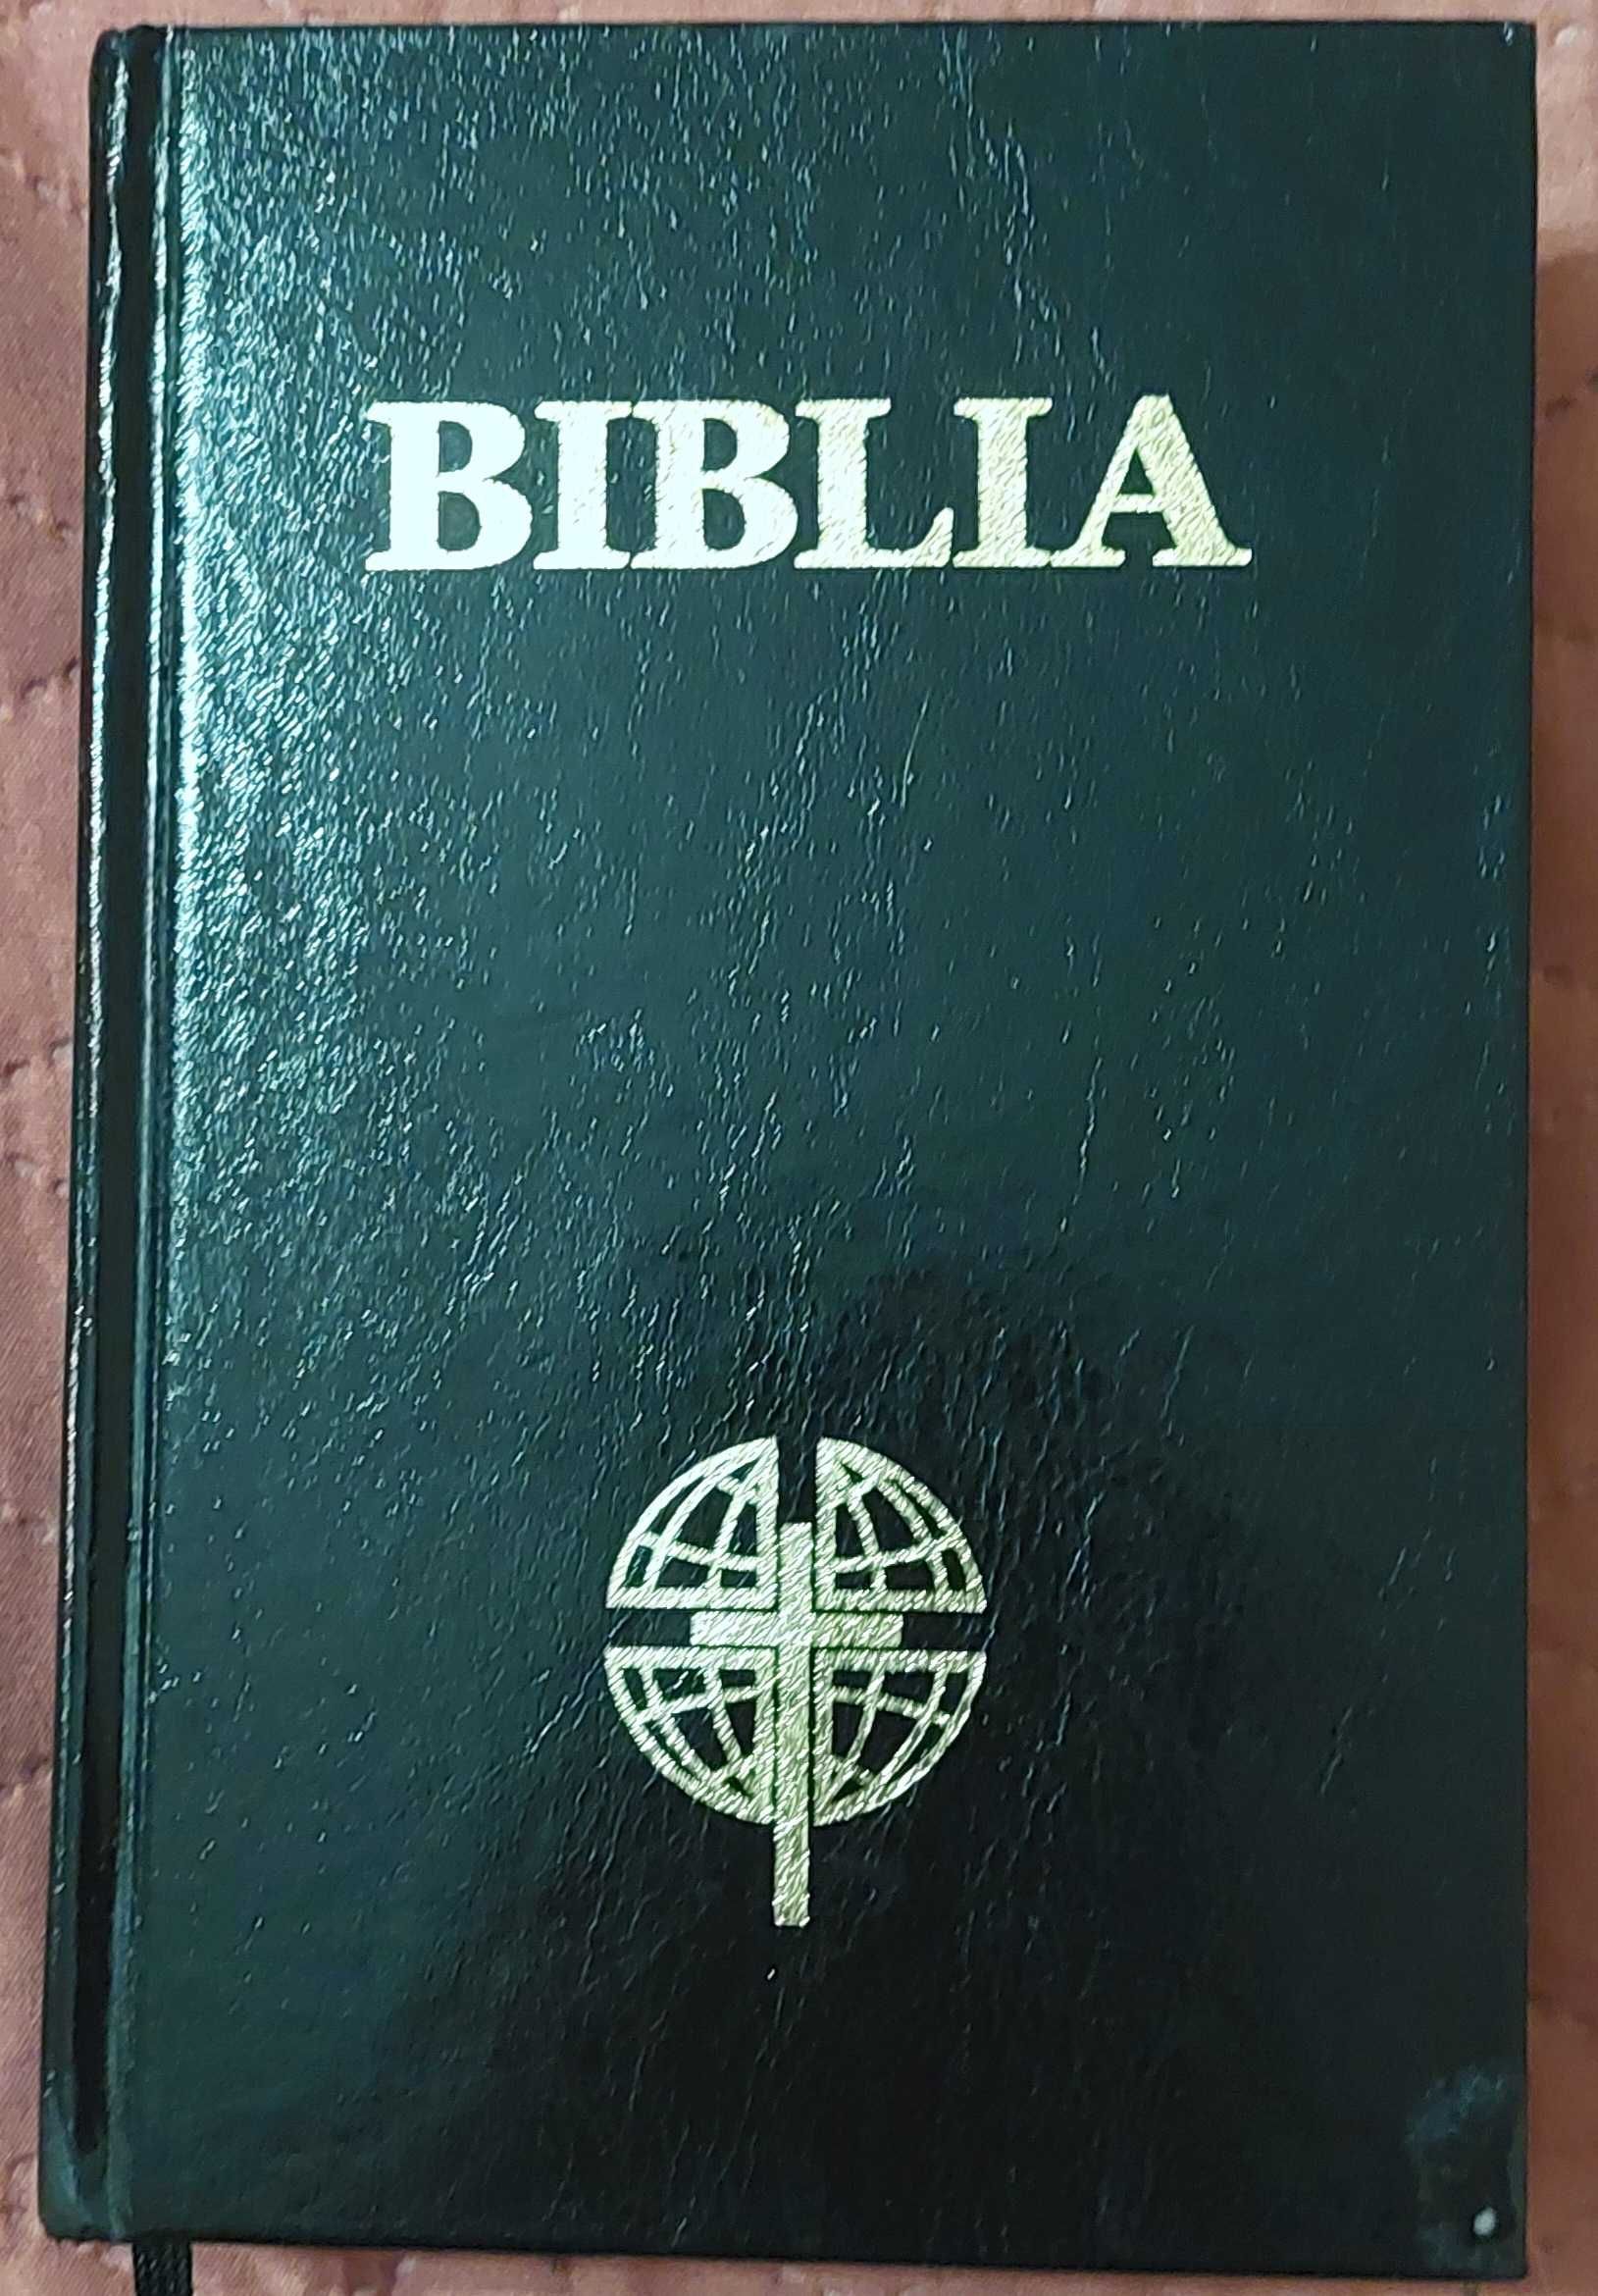 Biblia sau Sfanta Scriptura a Vechiului si Noului Testament